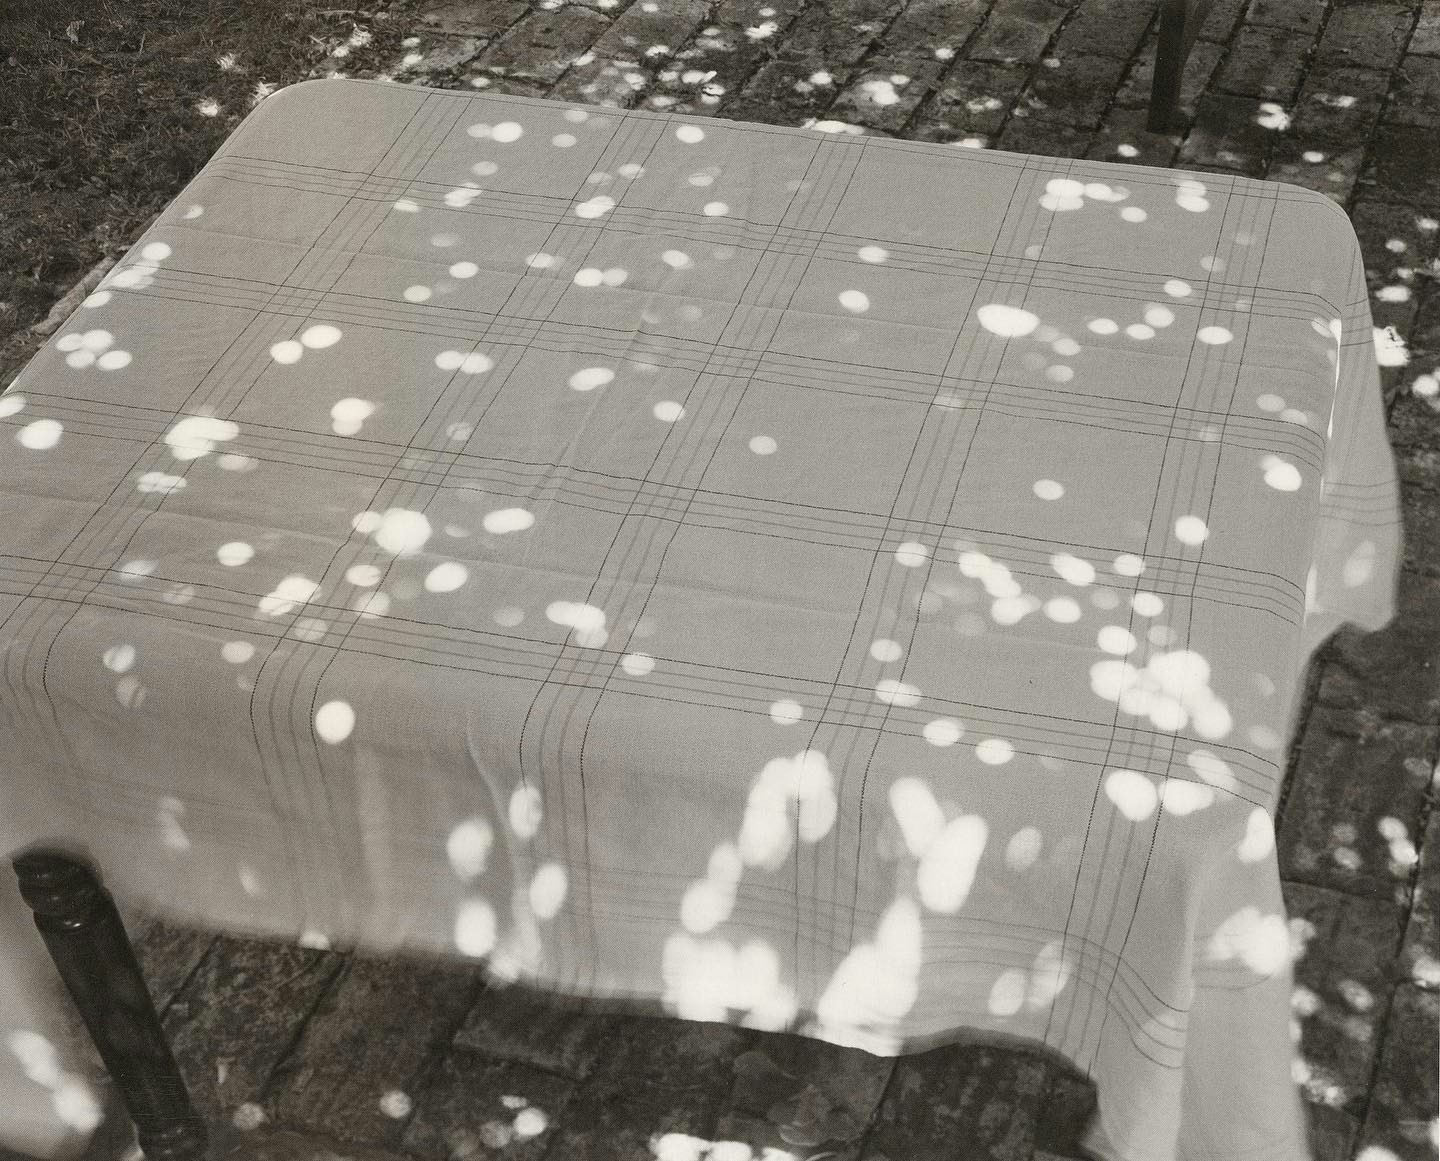 Abelardo Morell, “Sunspots on Covered Table”